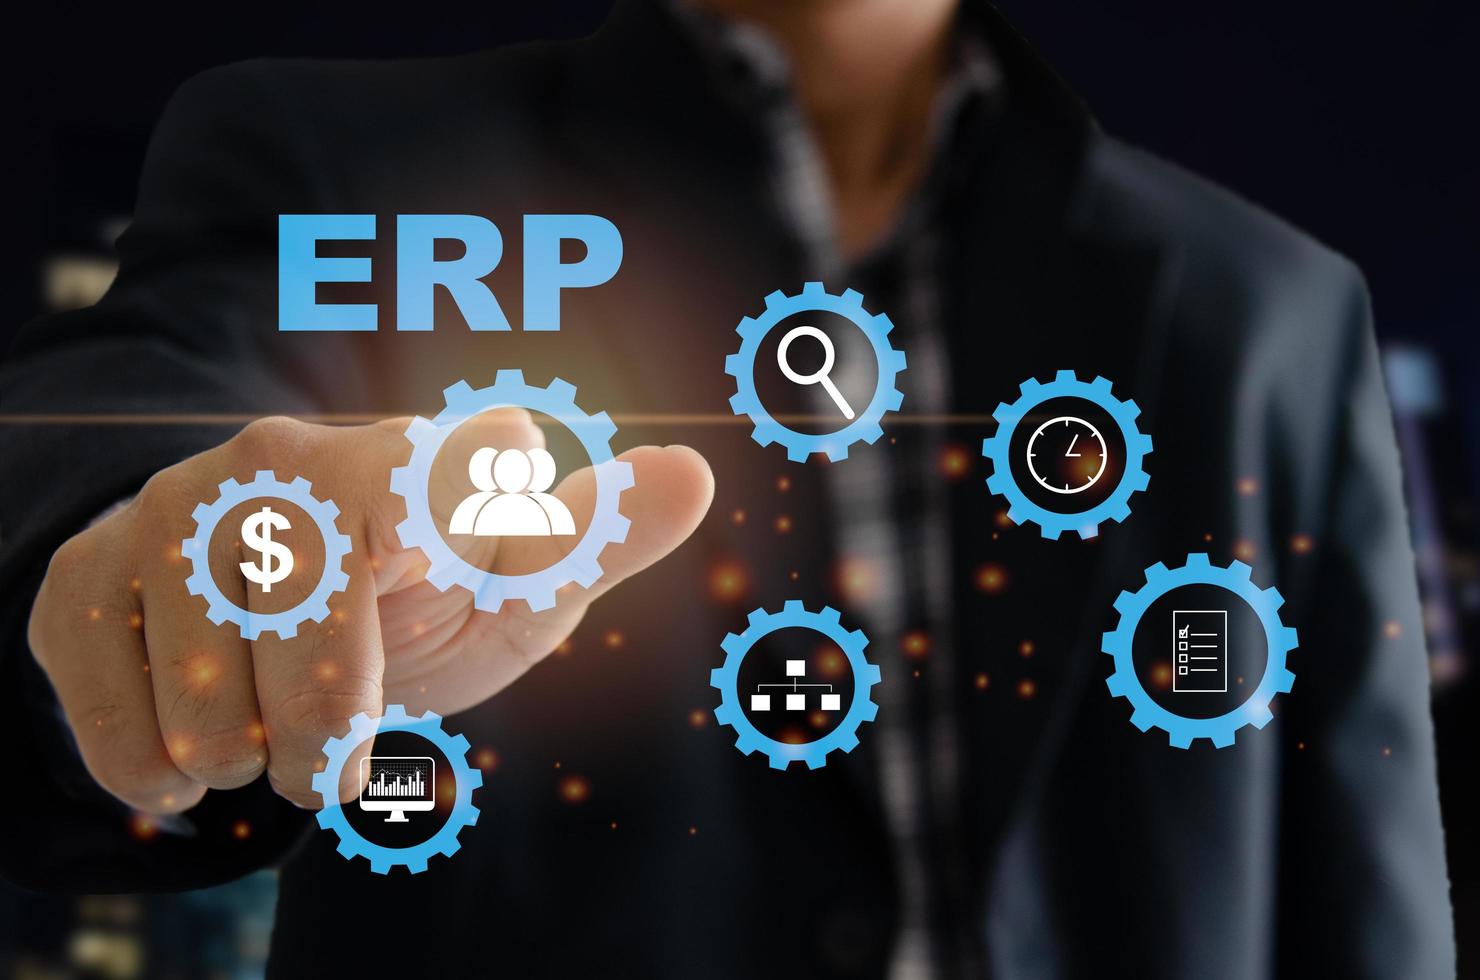 sistema de software ERP de planejamento de recursos empresariais para planos de recursos de negócios. a mão de um homem toca a palavra erp em uma tela virtual. foto